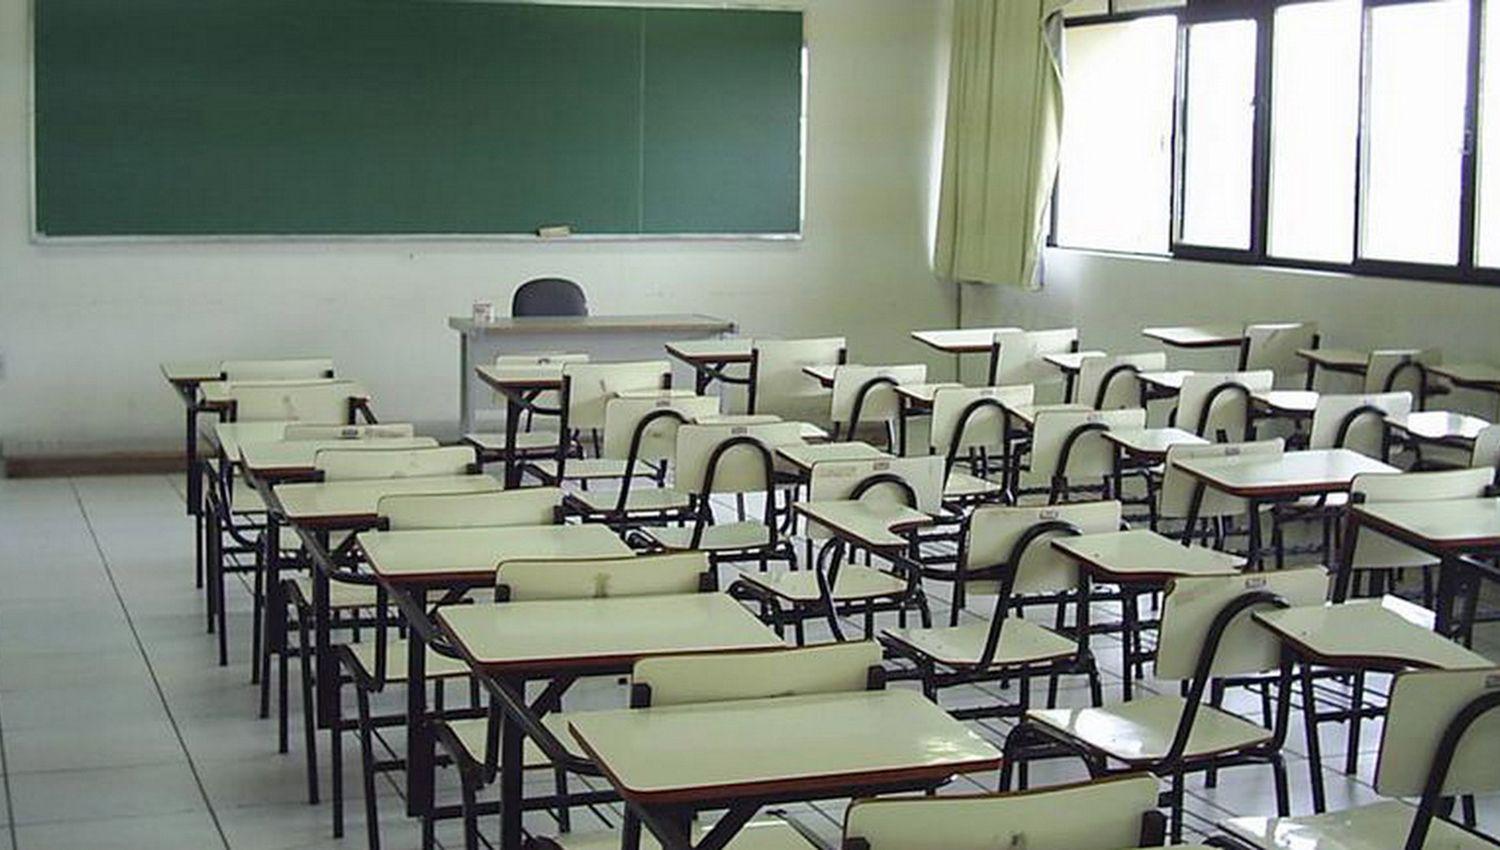 Los alumnos del uacuteltimo antildeo del secundario podraacuten terminar las clases en abril de 2021